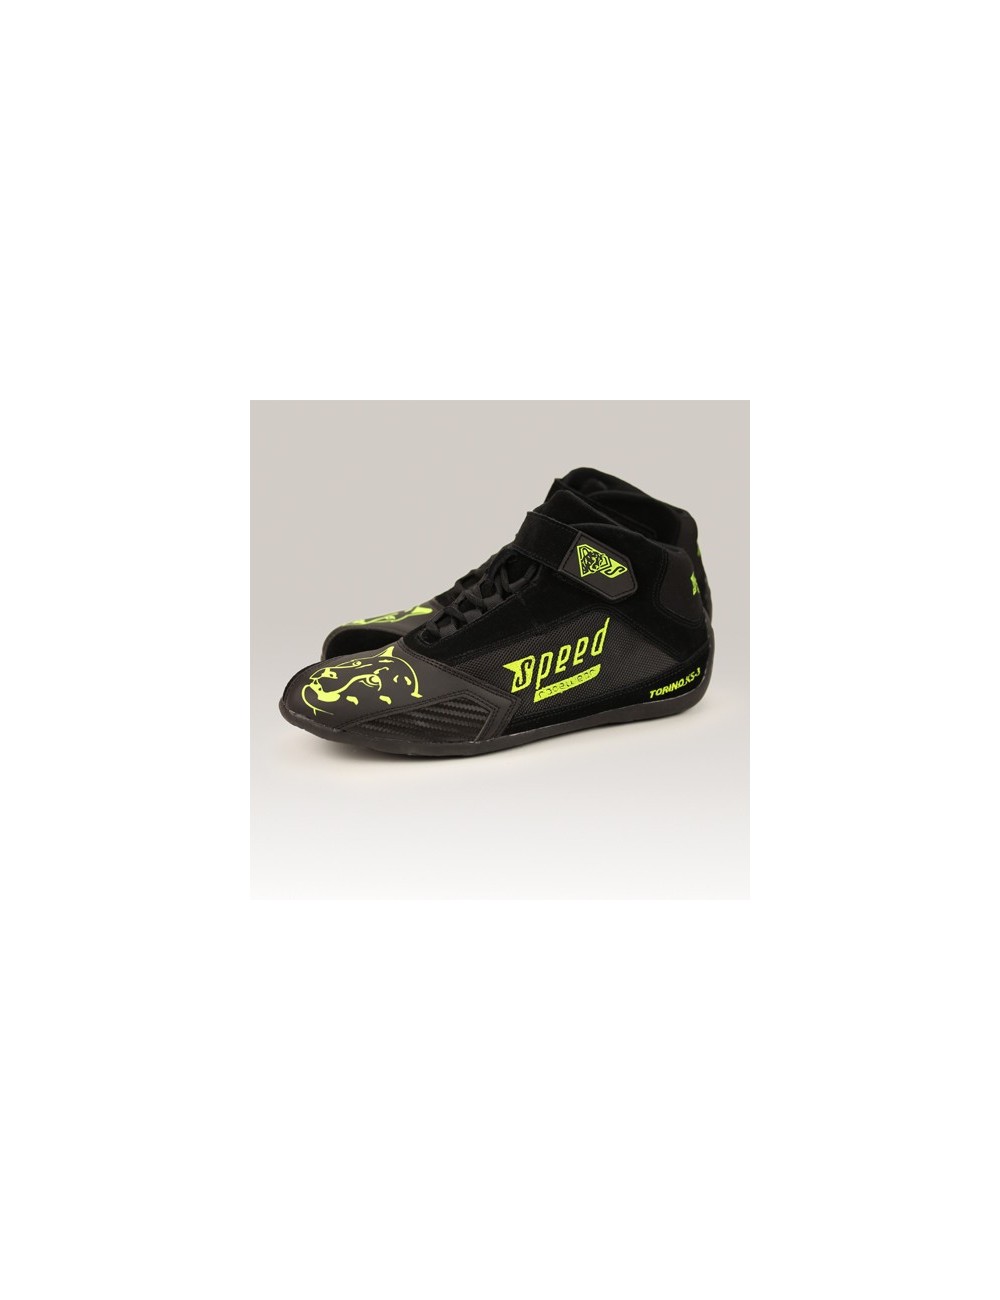 SPEED Schuhe Torino KS-3 schwarz / neongelbe Größe